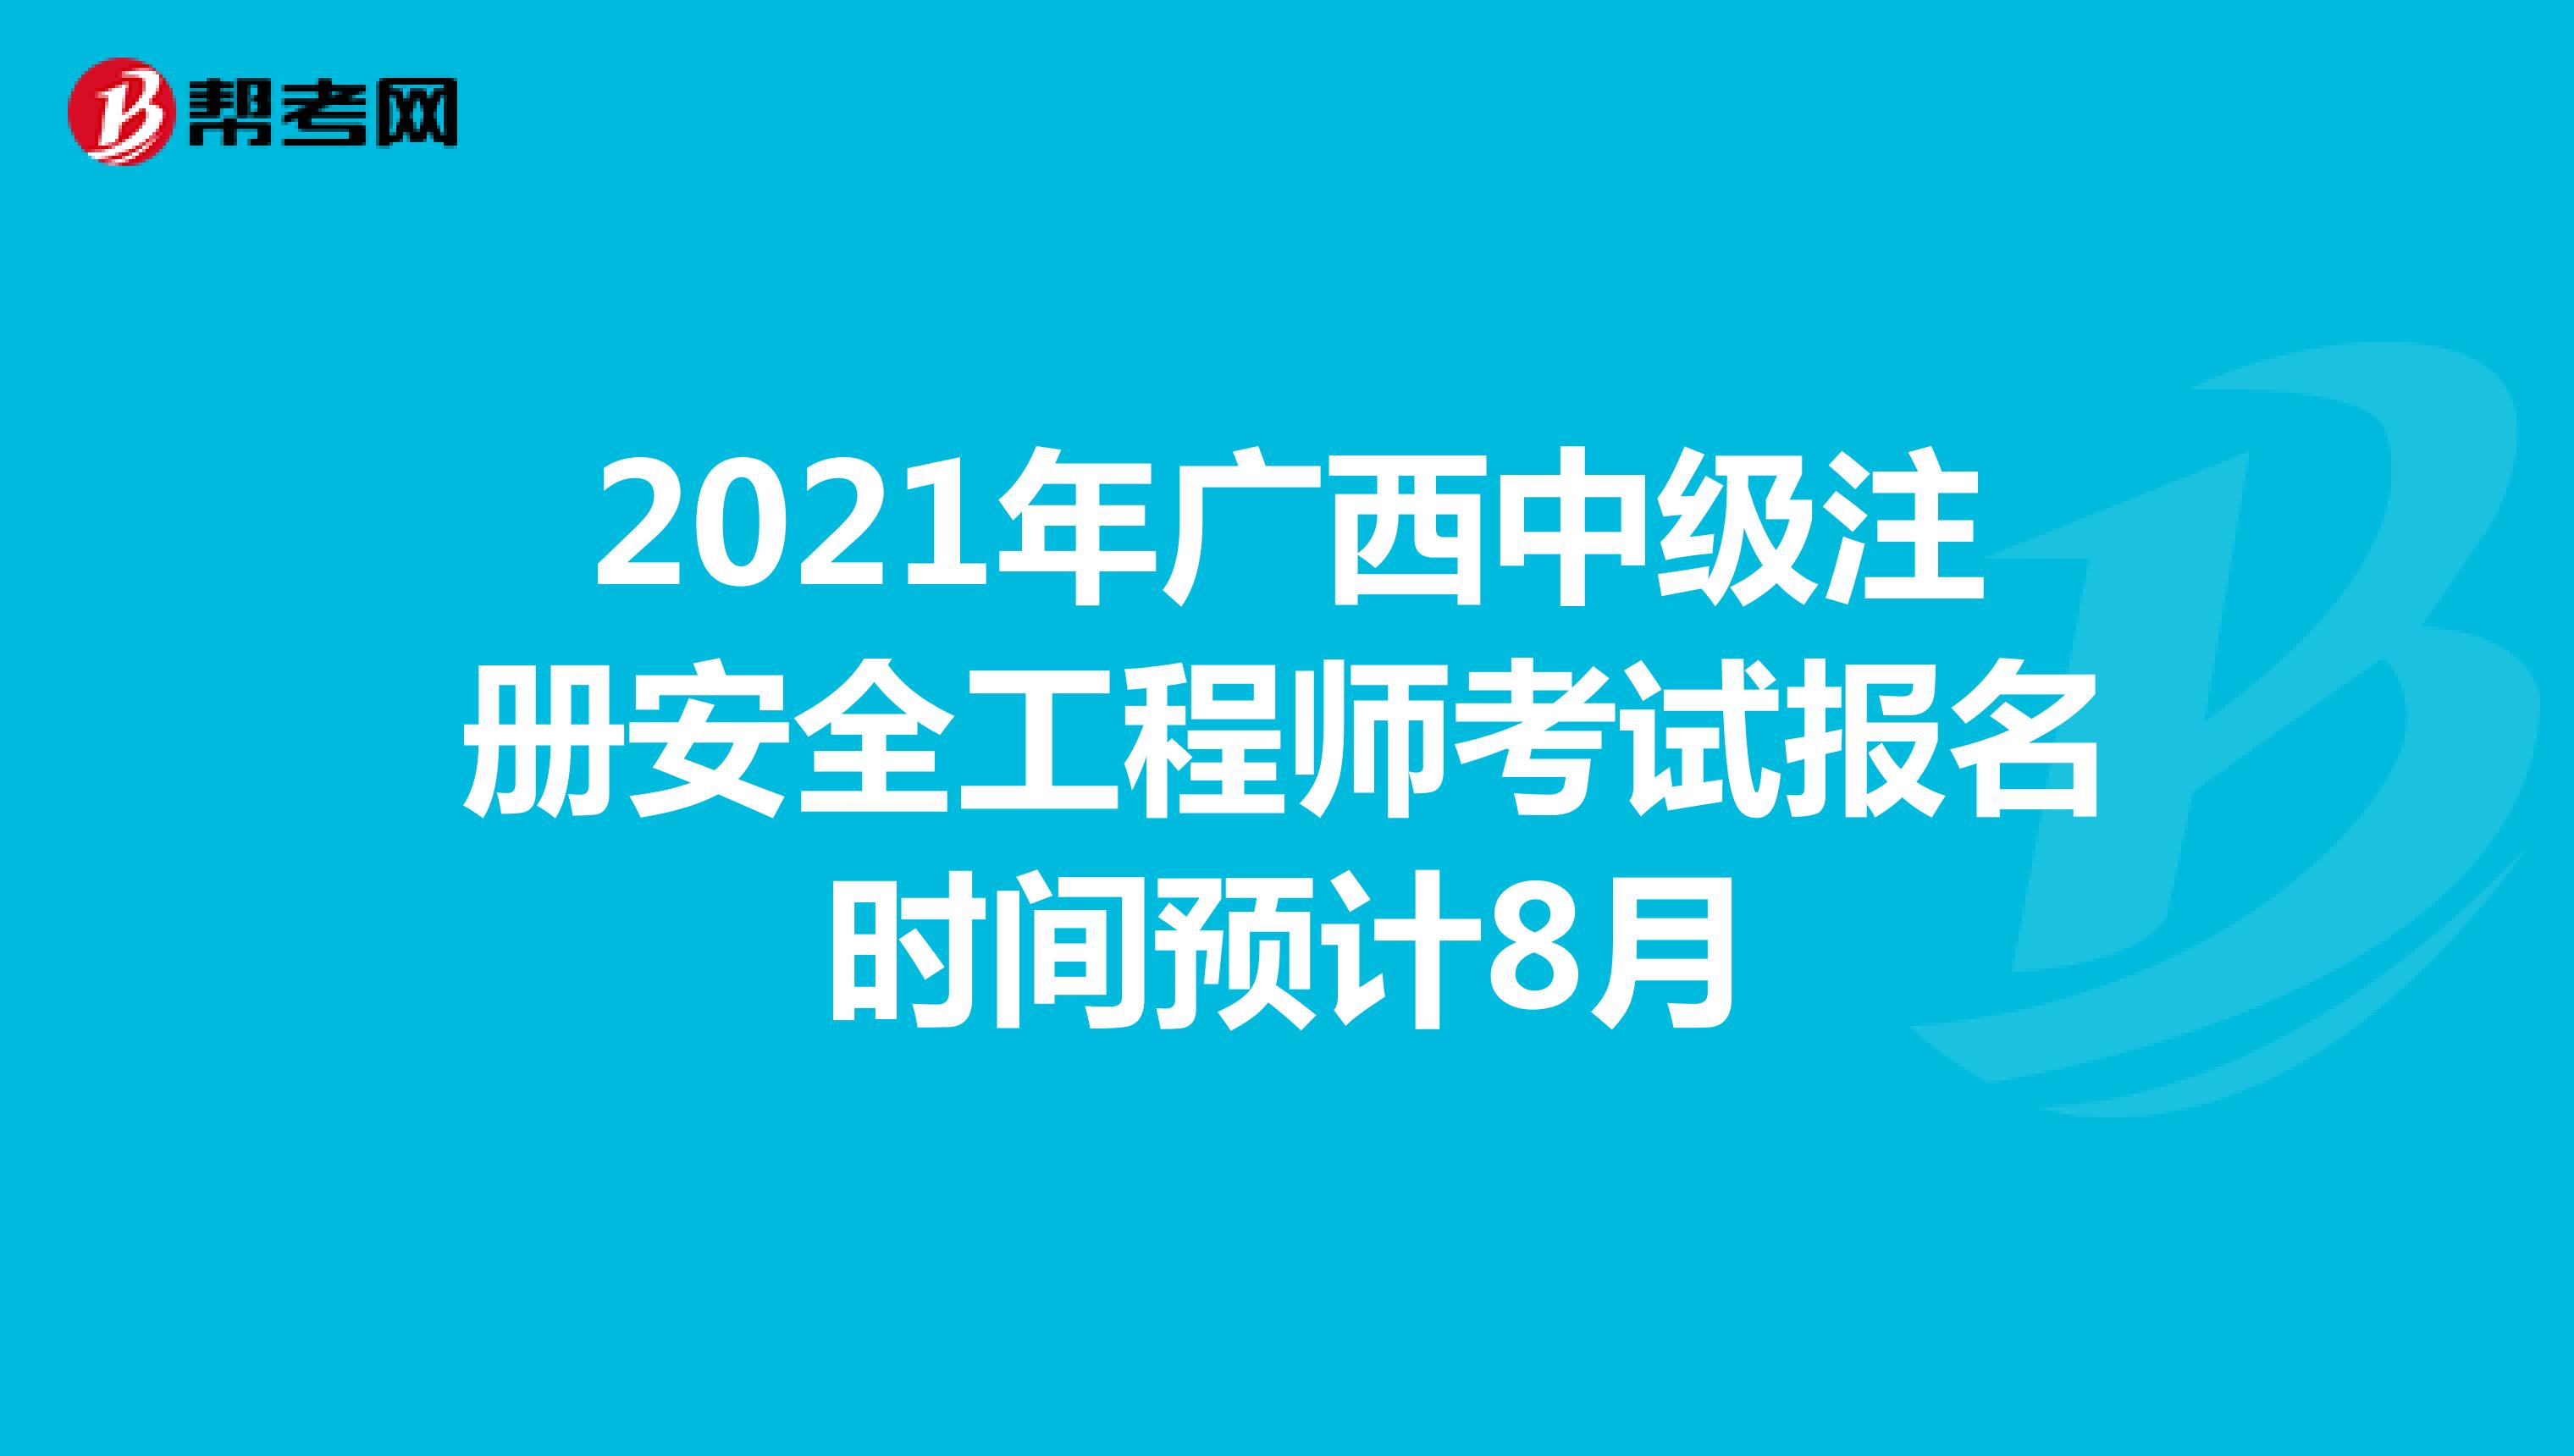 2021年广西中级注册安全工程师考试报名时间预计8月